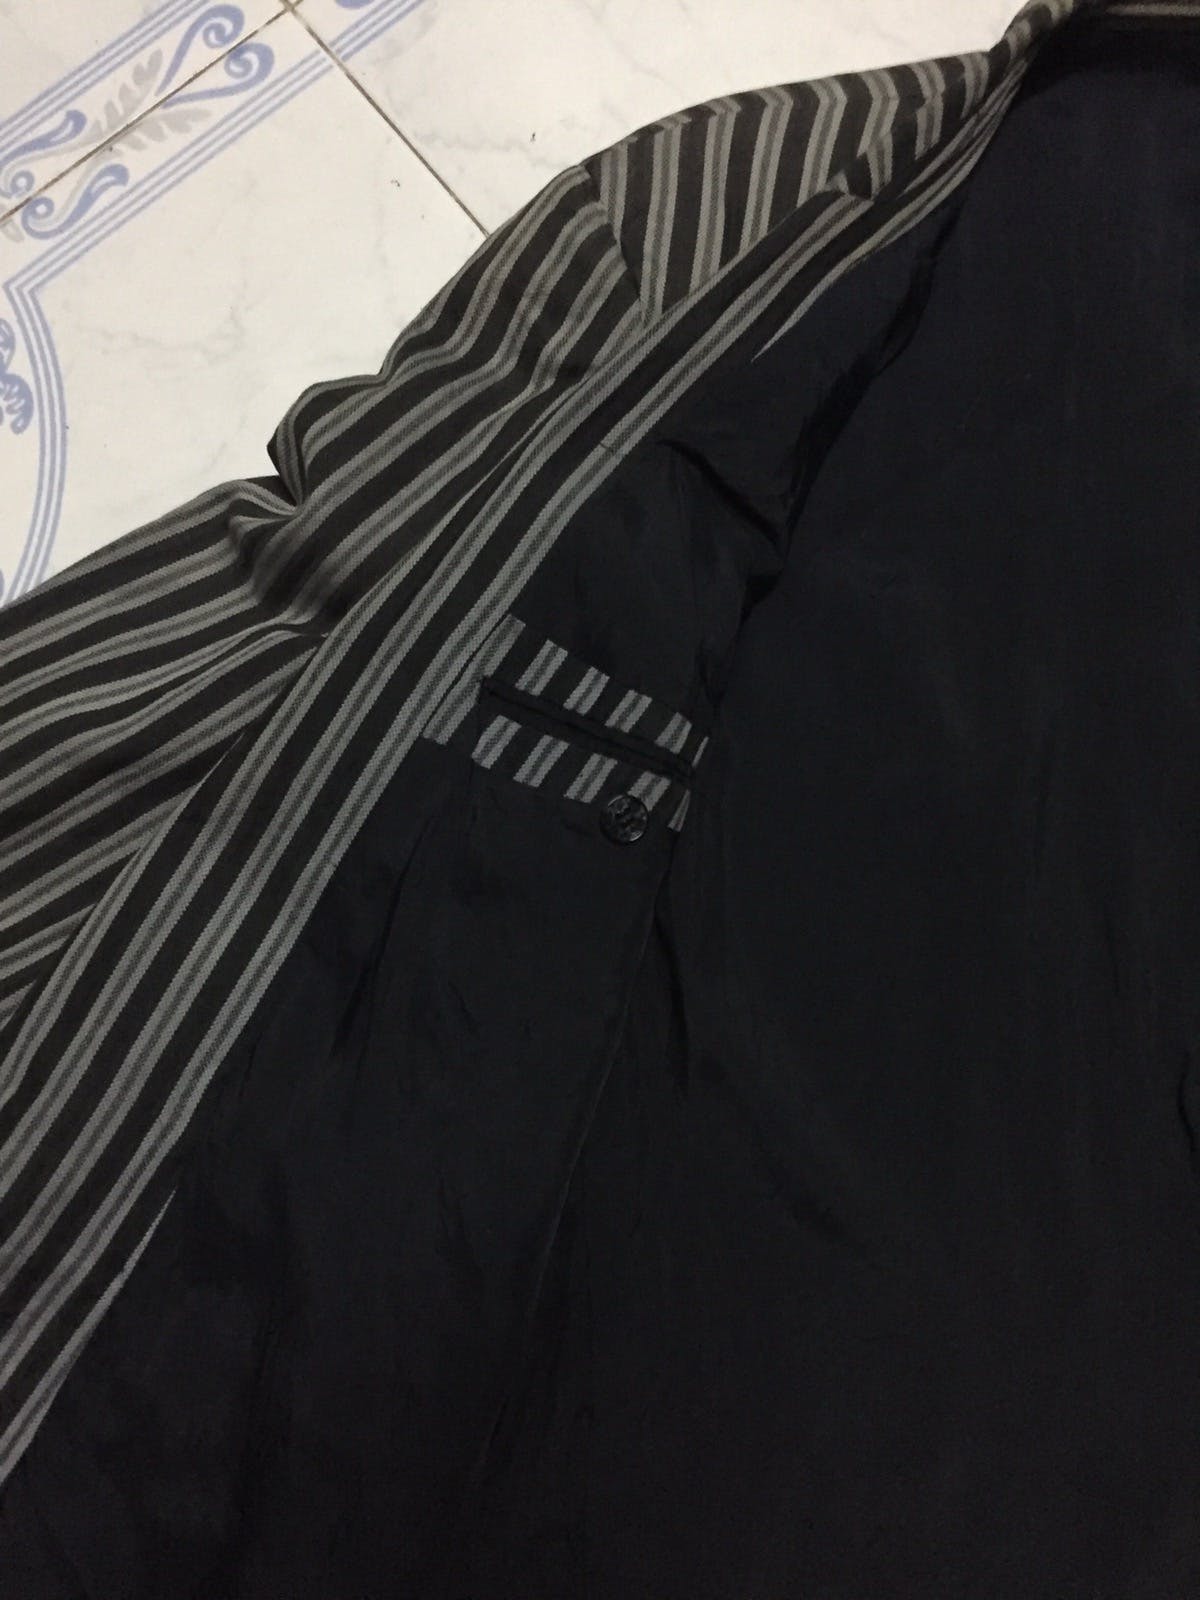 Kenzo Zebra Stripes Jacket Coat Made in Japan - 16